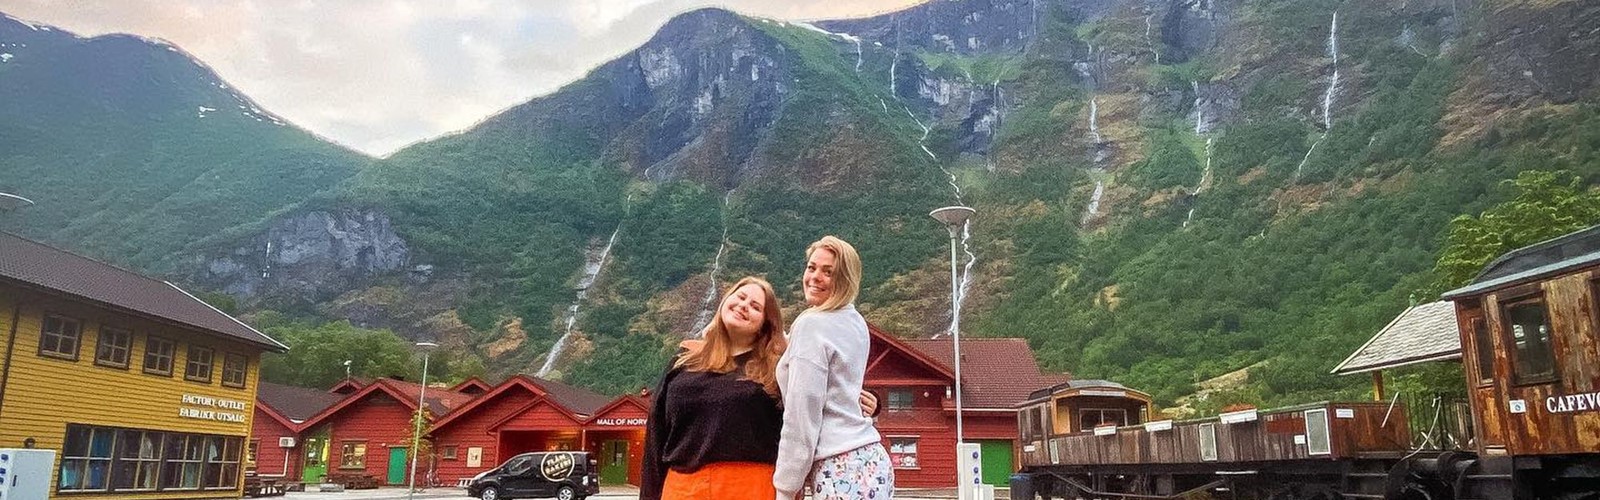 Norwegianwanderer Instagram